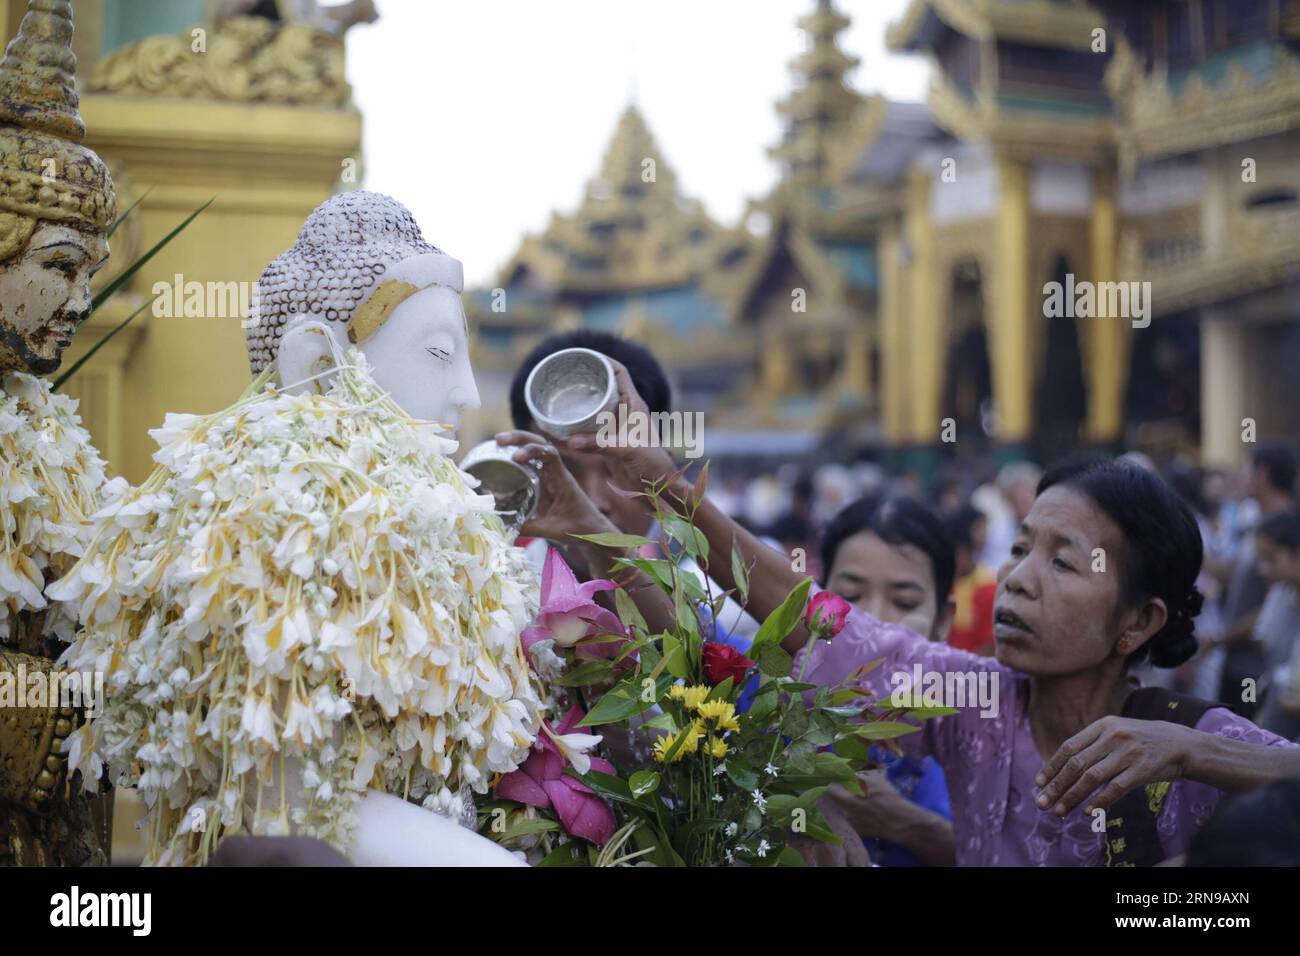 Gläubige gießen Wasser über eine Buddha-Statue auf Myanmars traditionellem Tazaungdaing-Festival in der Shwedagon-Pagode in Yangon, Myanmar, 26. November 2015. Das Tazaungdaing Festival, auch bekannt als das Festival der Lichter, das im achten Monat des traditionellen myanmarischen Kalenders auf den Vollmondtag fällt, wird als Nationalfeiertag in Myanmar gefeiert und markiert das Ende der Regenzeit. ) MYANMAR-YANGON-TAZAUNGDAING FESTIVAL UxAung PUBLICATIONxNOTxINxCHN Devotees gießen Wasser über eine Buddha-Statue AUF DEM traditionellen myanmarischen Tazaungdaing-Festival in der Shwedagon-Pagode in Yangon Myanmar, 26. November 20 Stockfoto